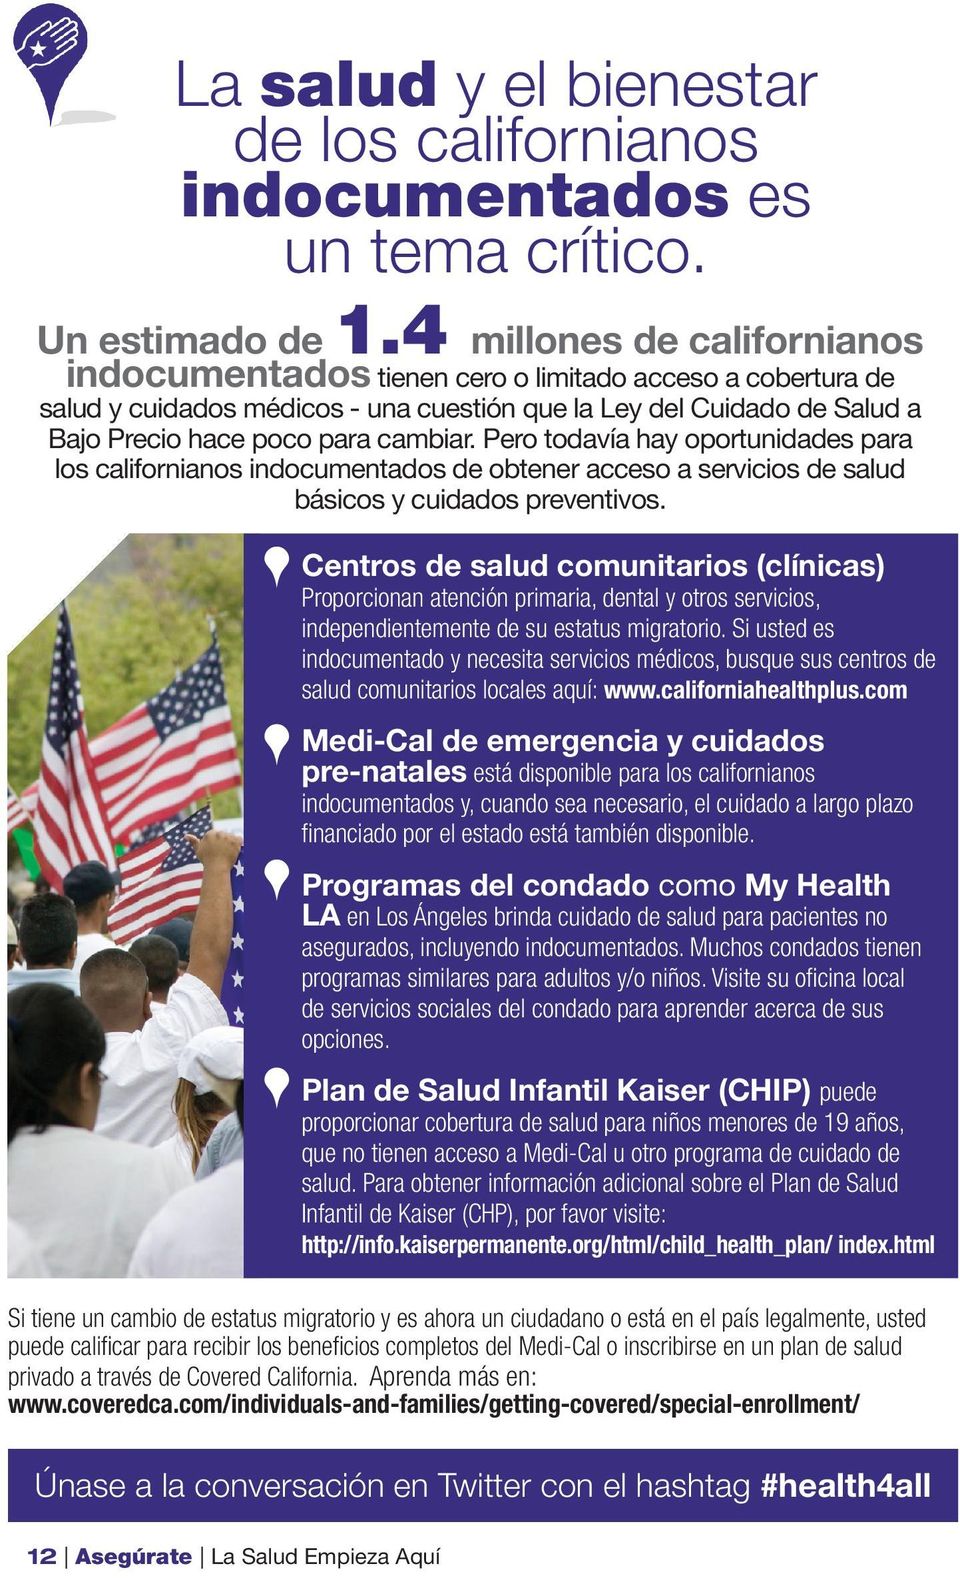 Pero todavía hay oportunidades para los californianos indocumentados de obtener acceso a servicios de salud básicos y cuidados preventivos.